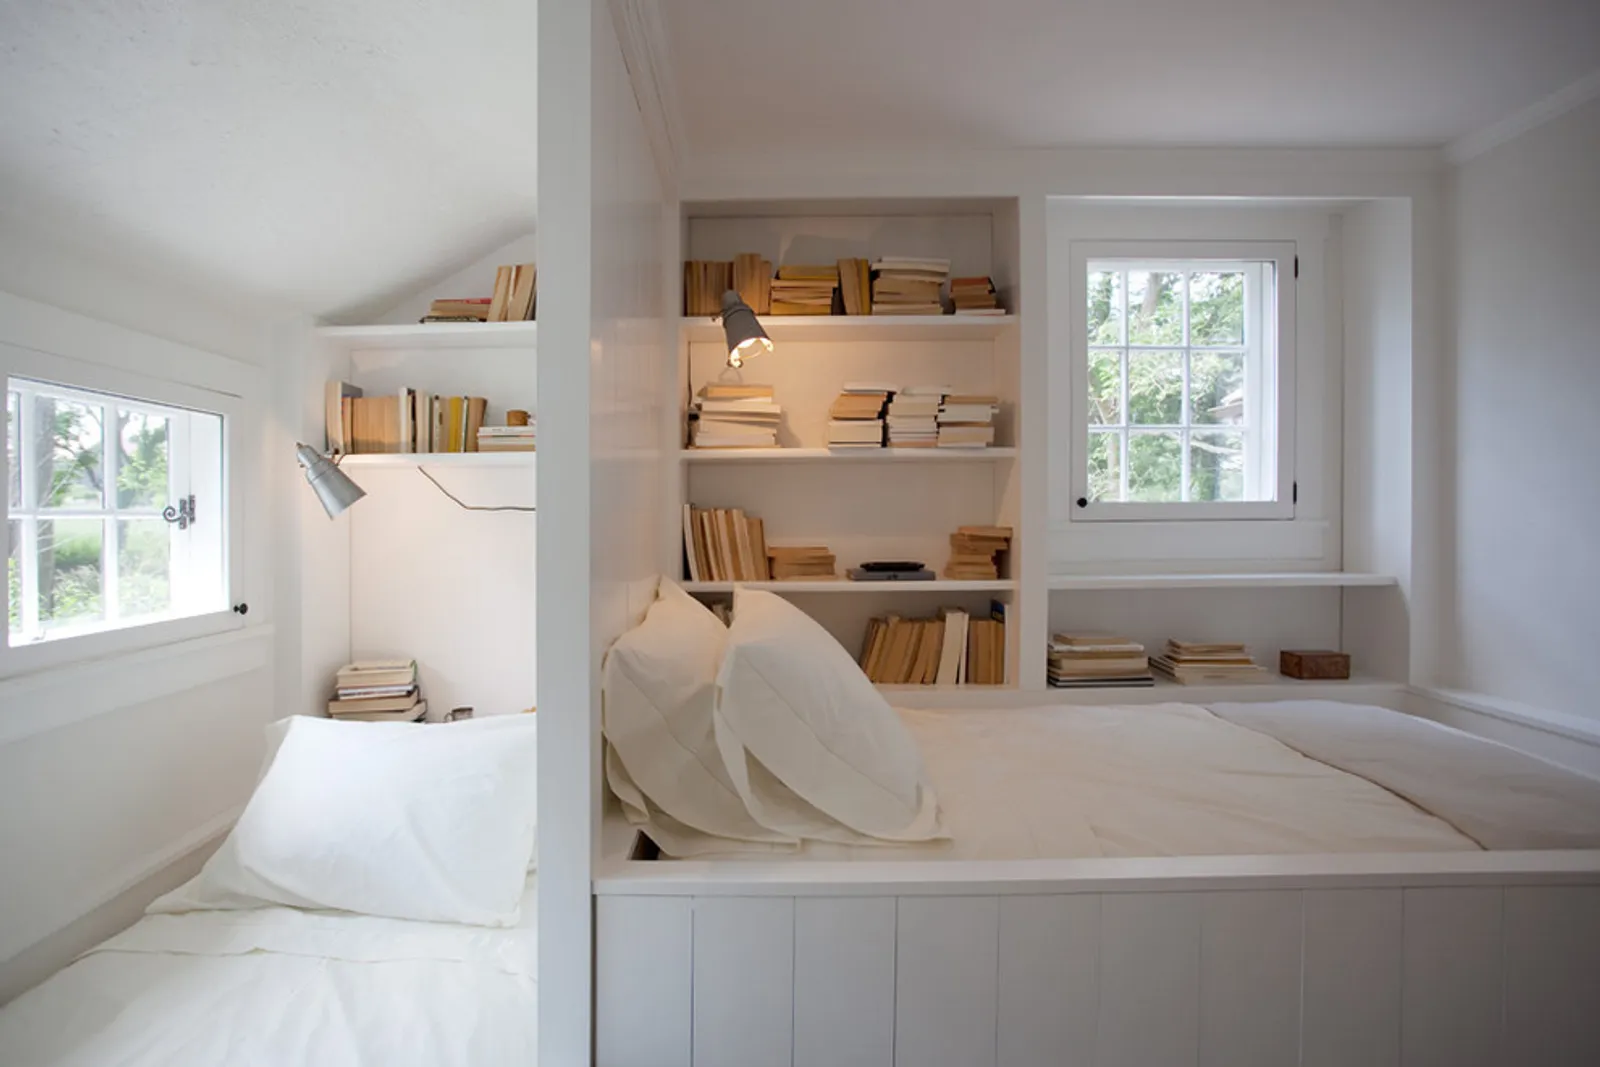 Ilusi Lebih Luas, Ini 7 Ide Desain Kamar Mungil dengan 2 Tempat Tidur